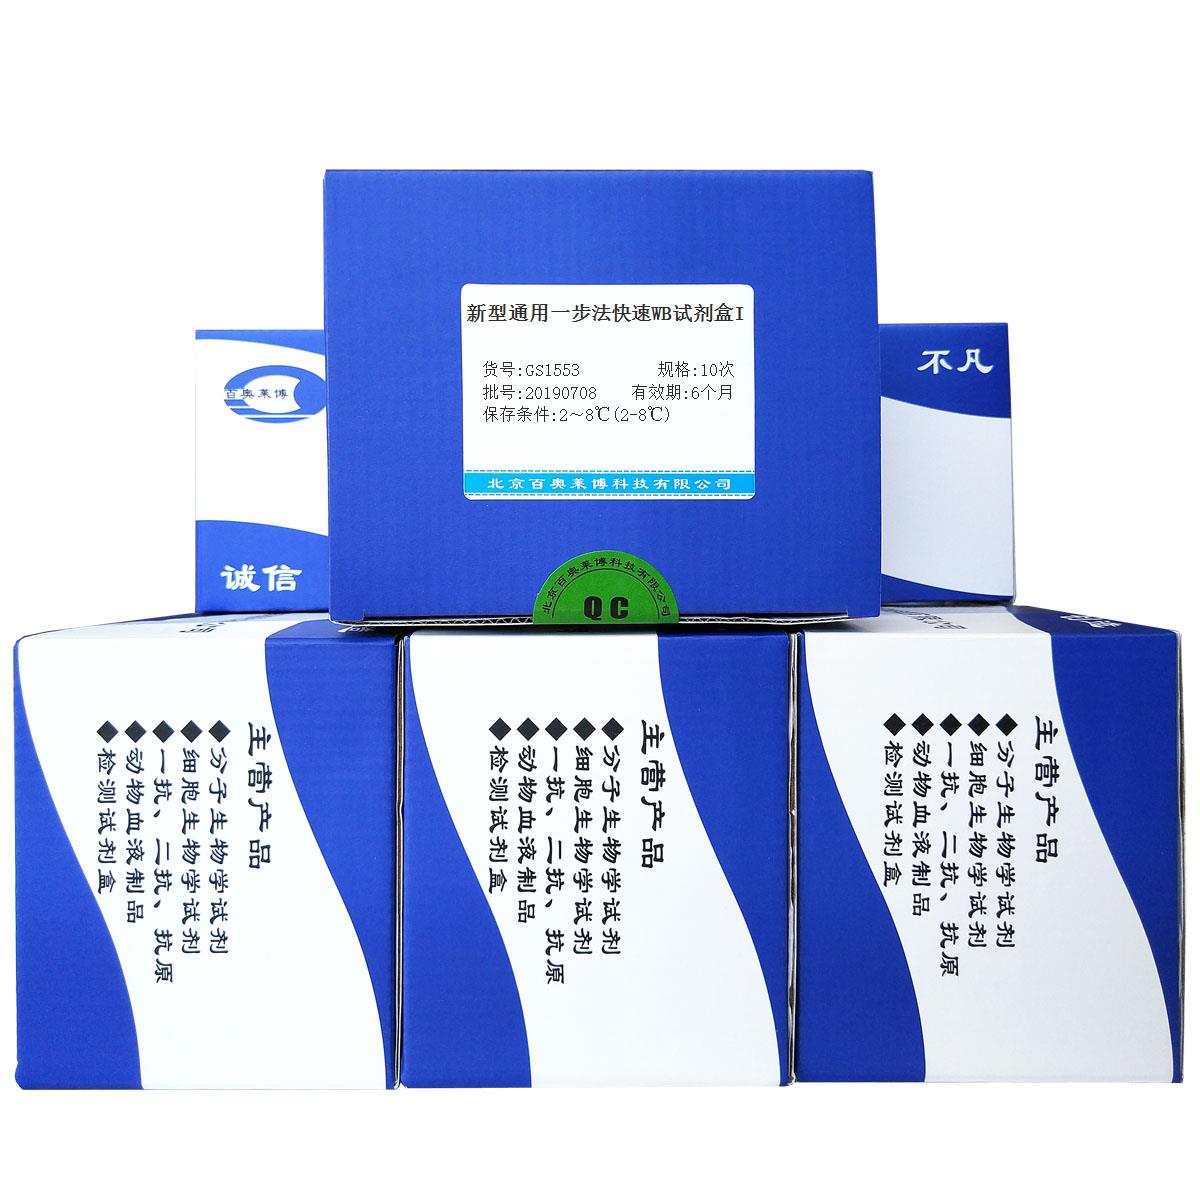 新型通用一步法快速WB试剂盒I北京供应商